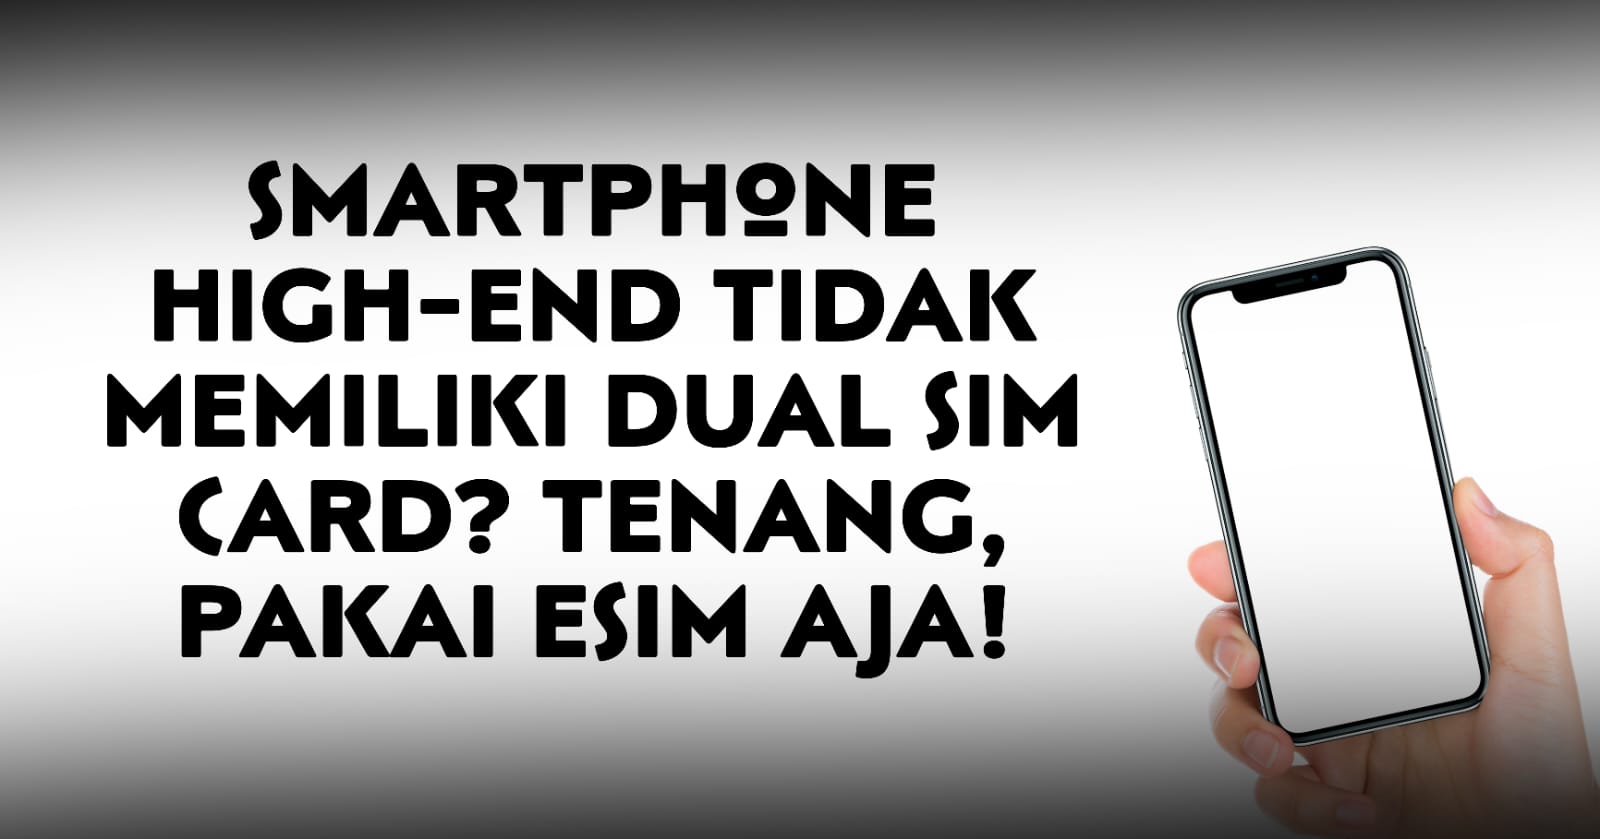 smartphone-high-end-tidak-memiliki-dual-sim-card-tenang-pakai-esim-aja